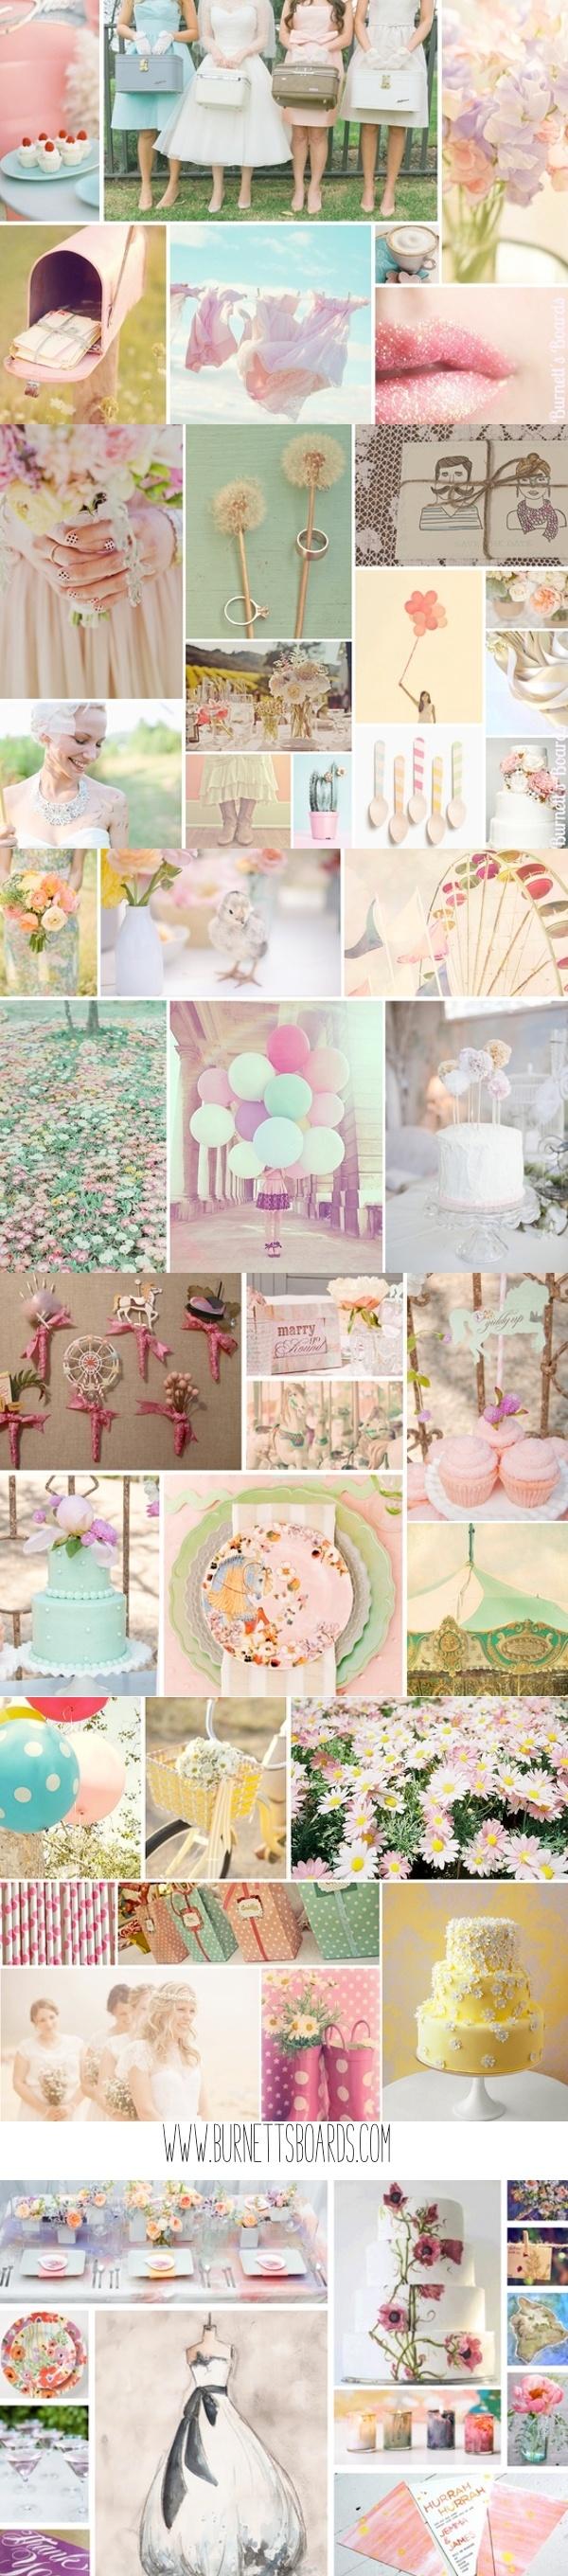 زفاف - Pastel Wedding Inspiration Boards